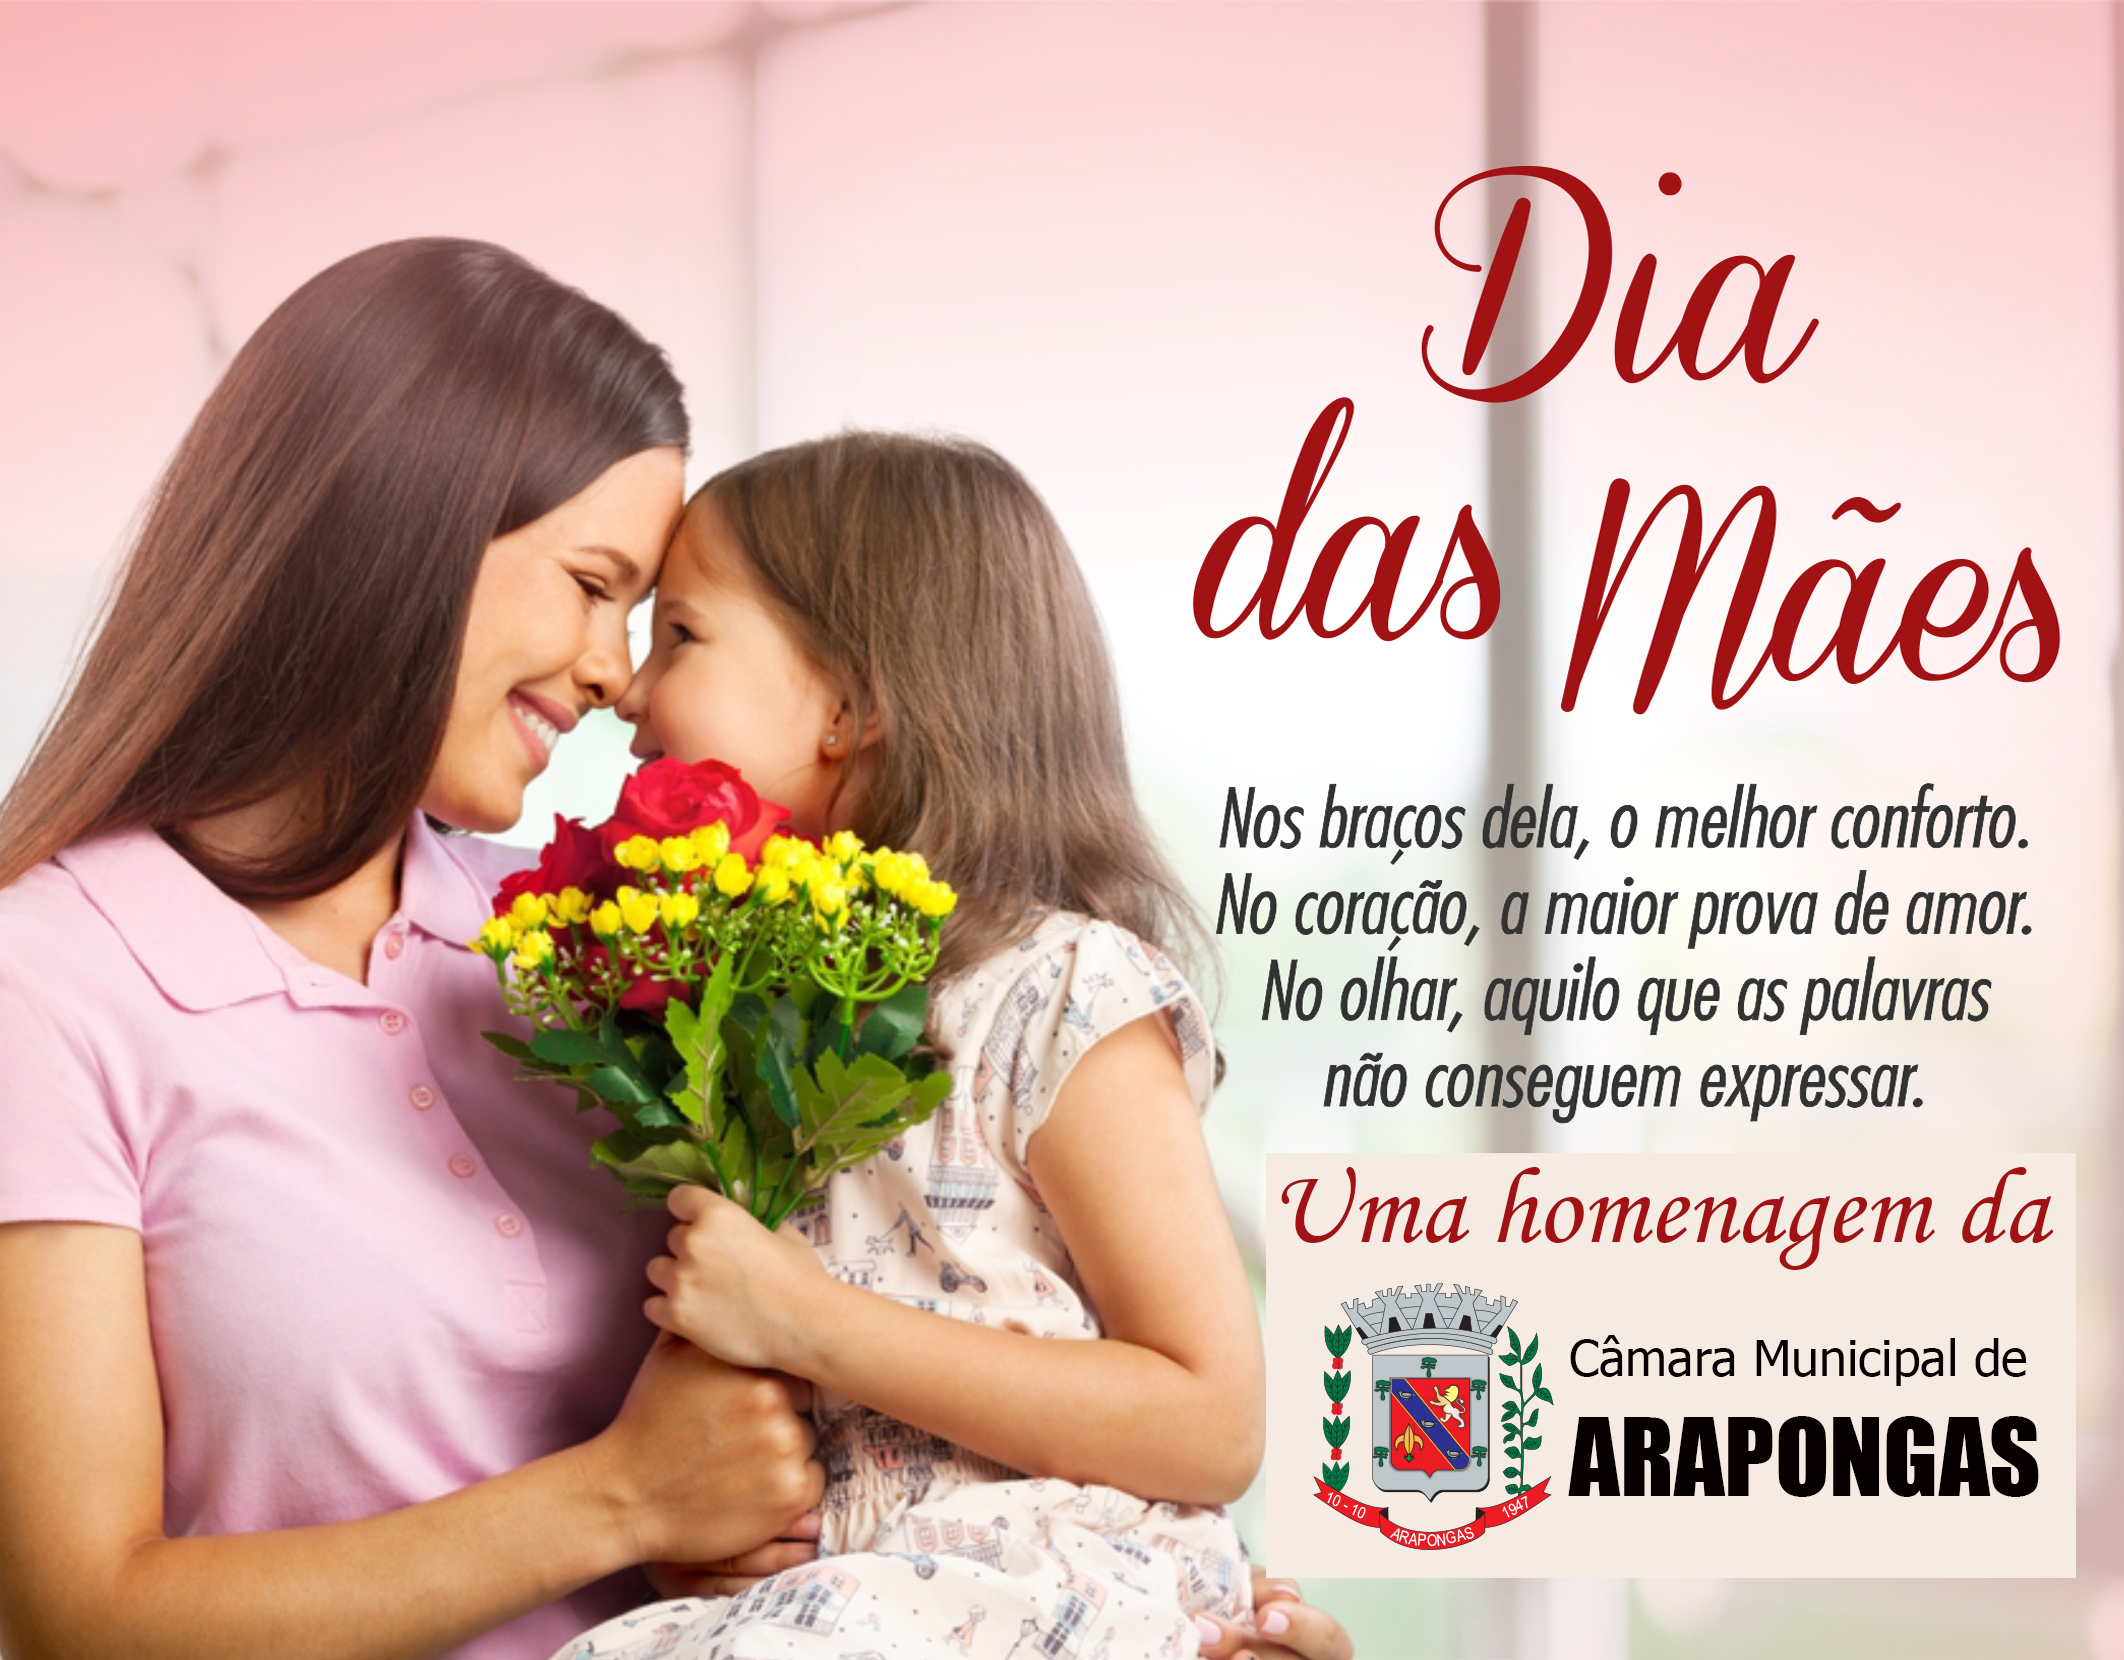 A Câmara Municipal de Arapongas deseja a todas as Mamães um feliz e abençoado dia das Mães.